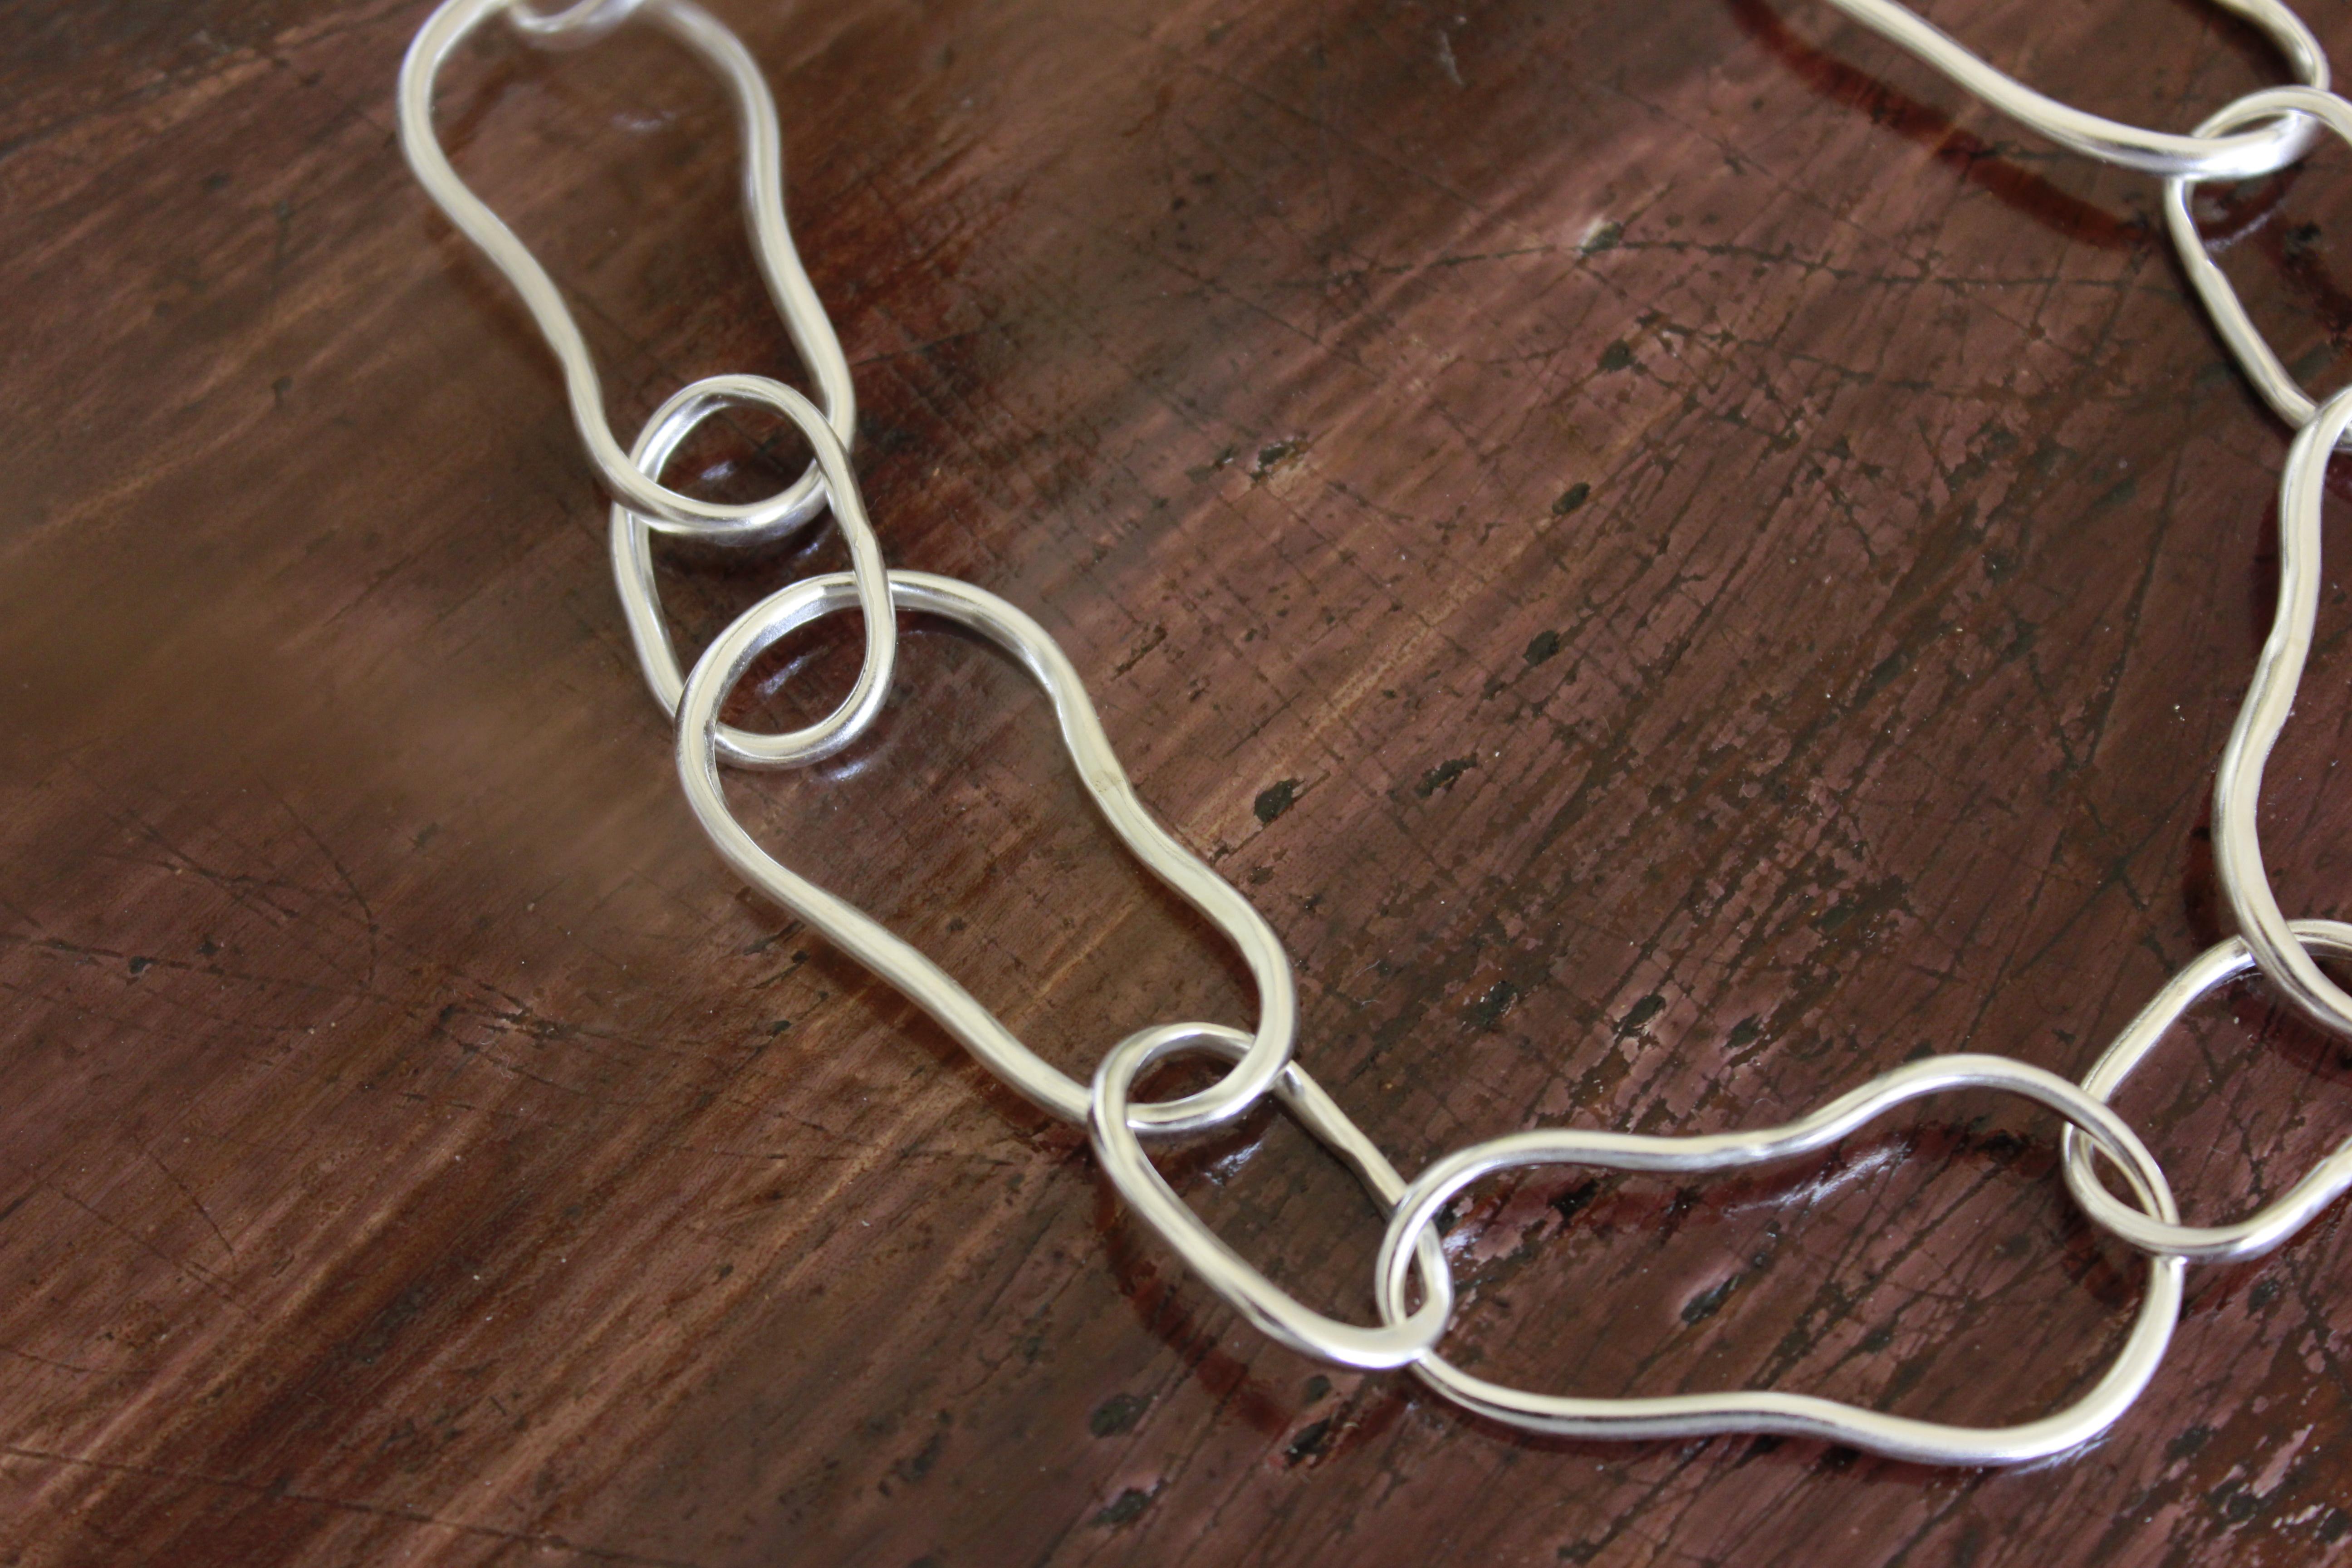 Diese Halskette ist aus Öko-Feinsilber gefertigt.

Ein auffälliges Stück, das den ganzen Tag getragen werden kann,

mit einem schönen Volumen, das Ihrem Outfit ein gewagtes Detail hinzufügt.

Die Halskette ist leicht, da sie hohl geformt